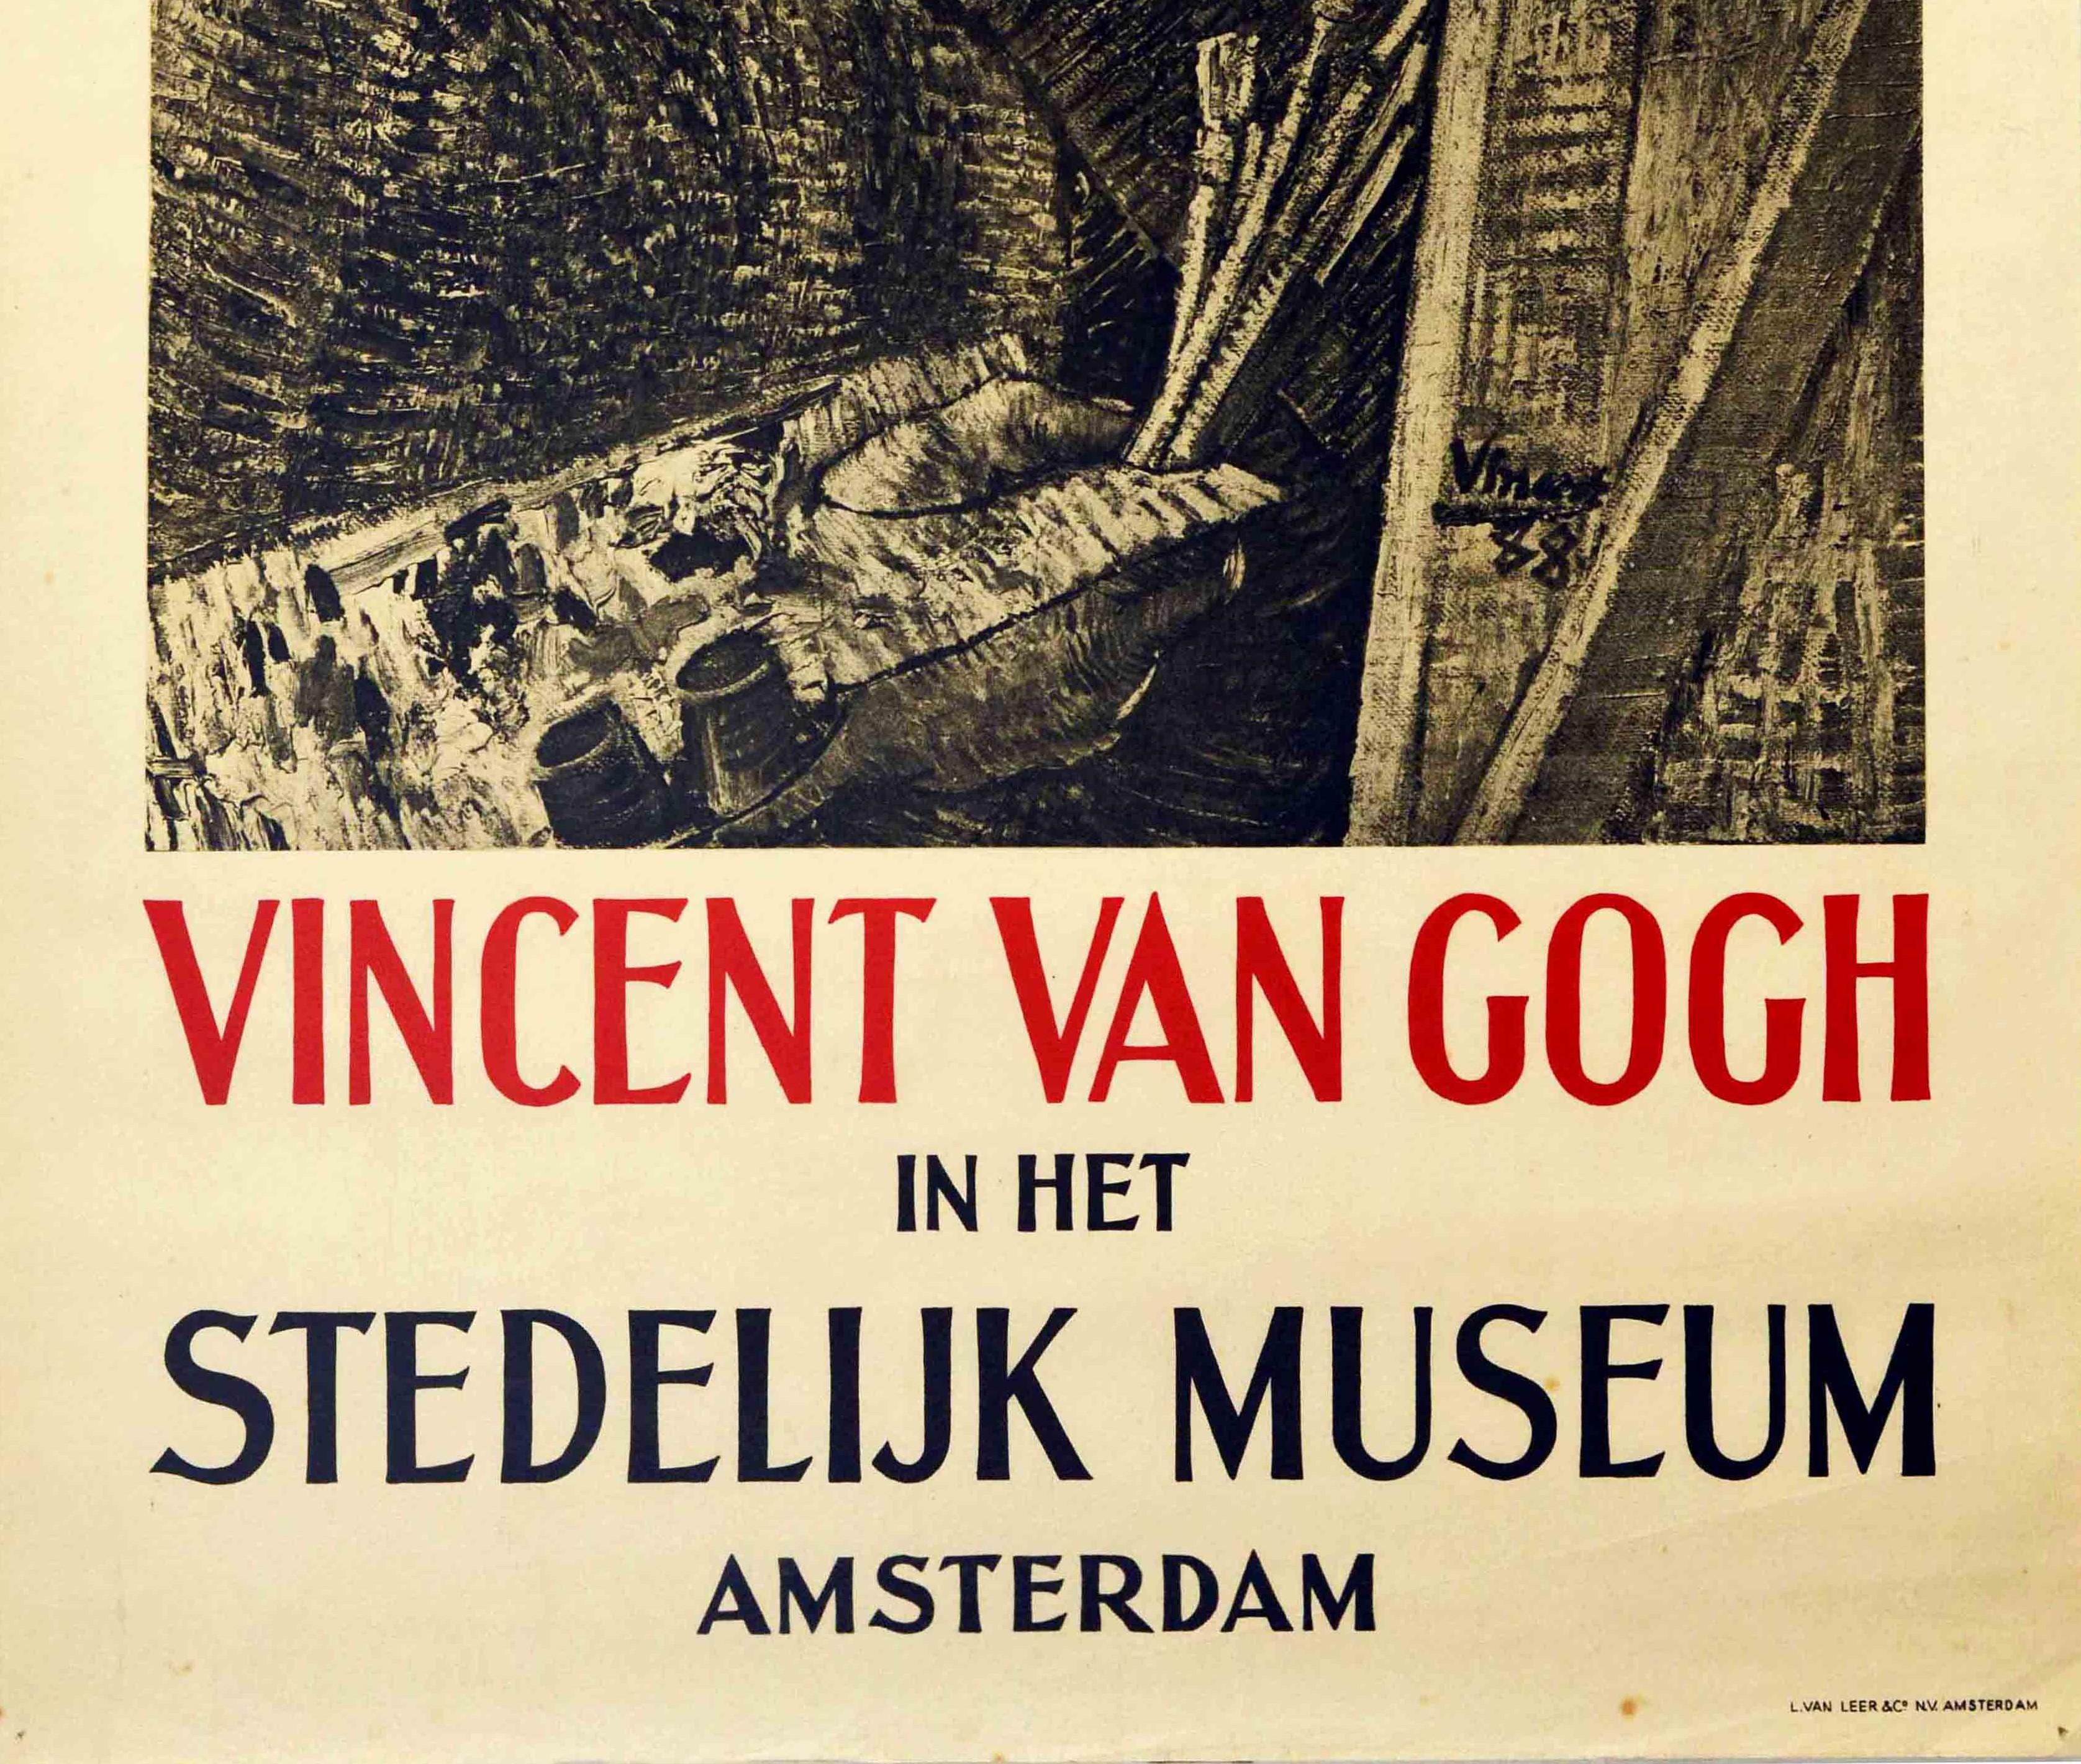 van gogh exhibit poster